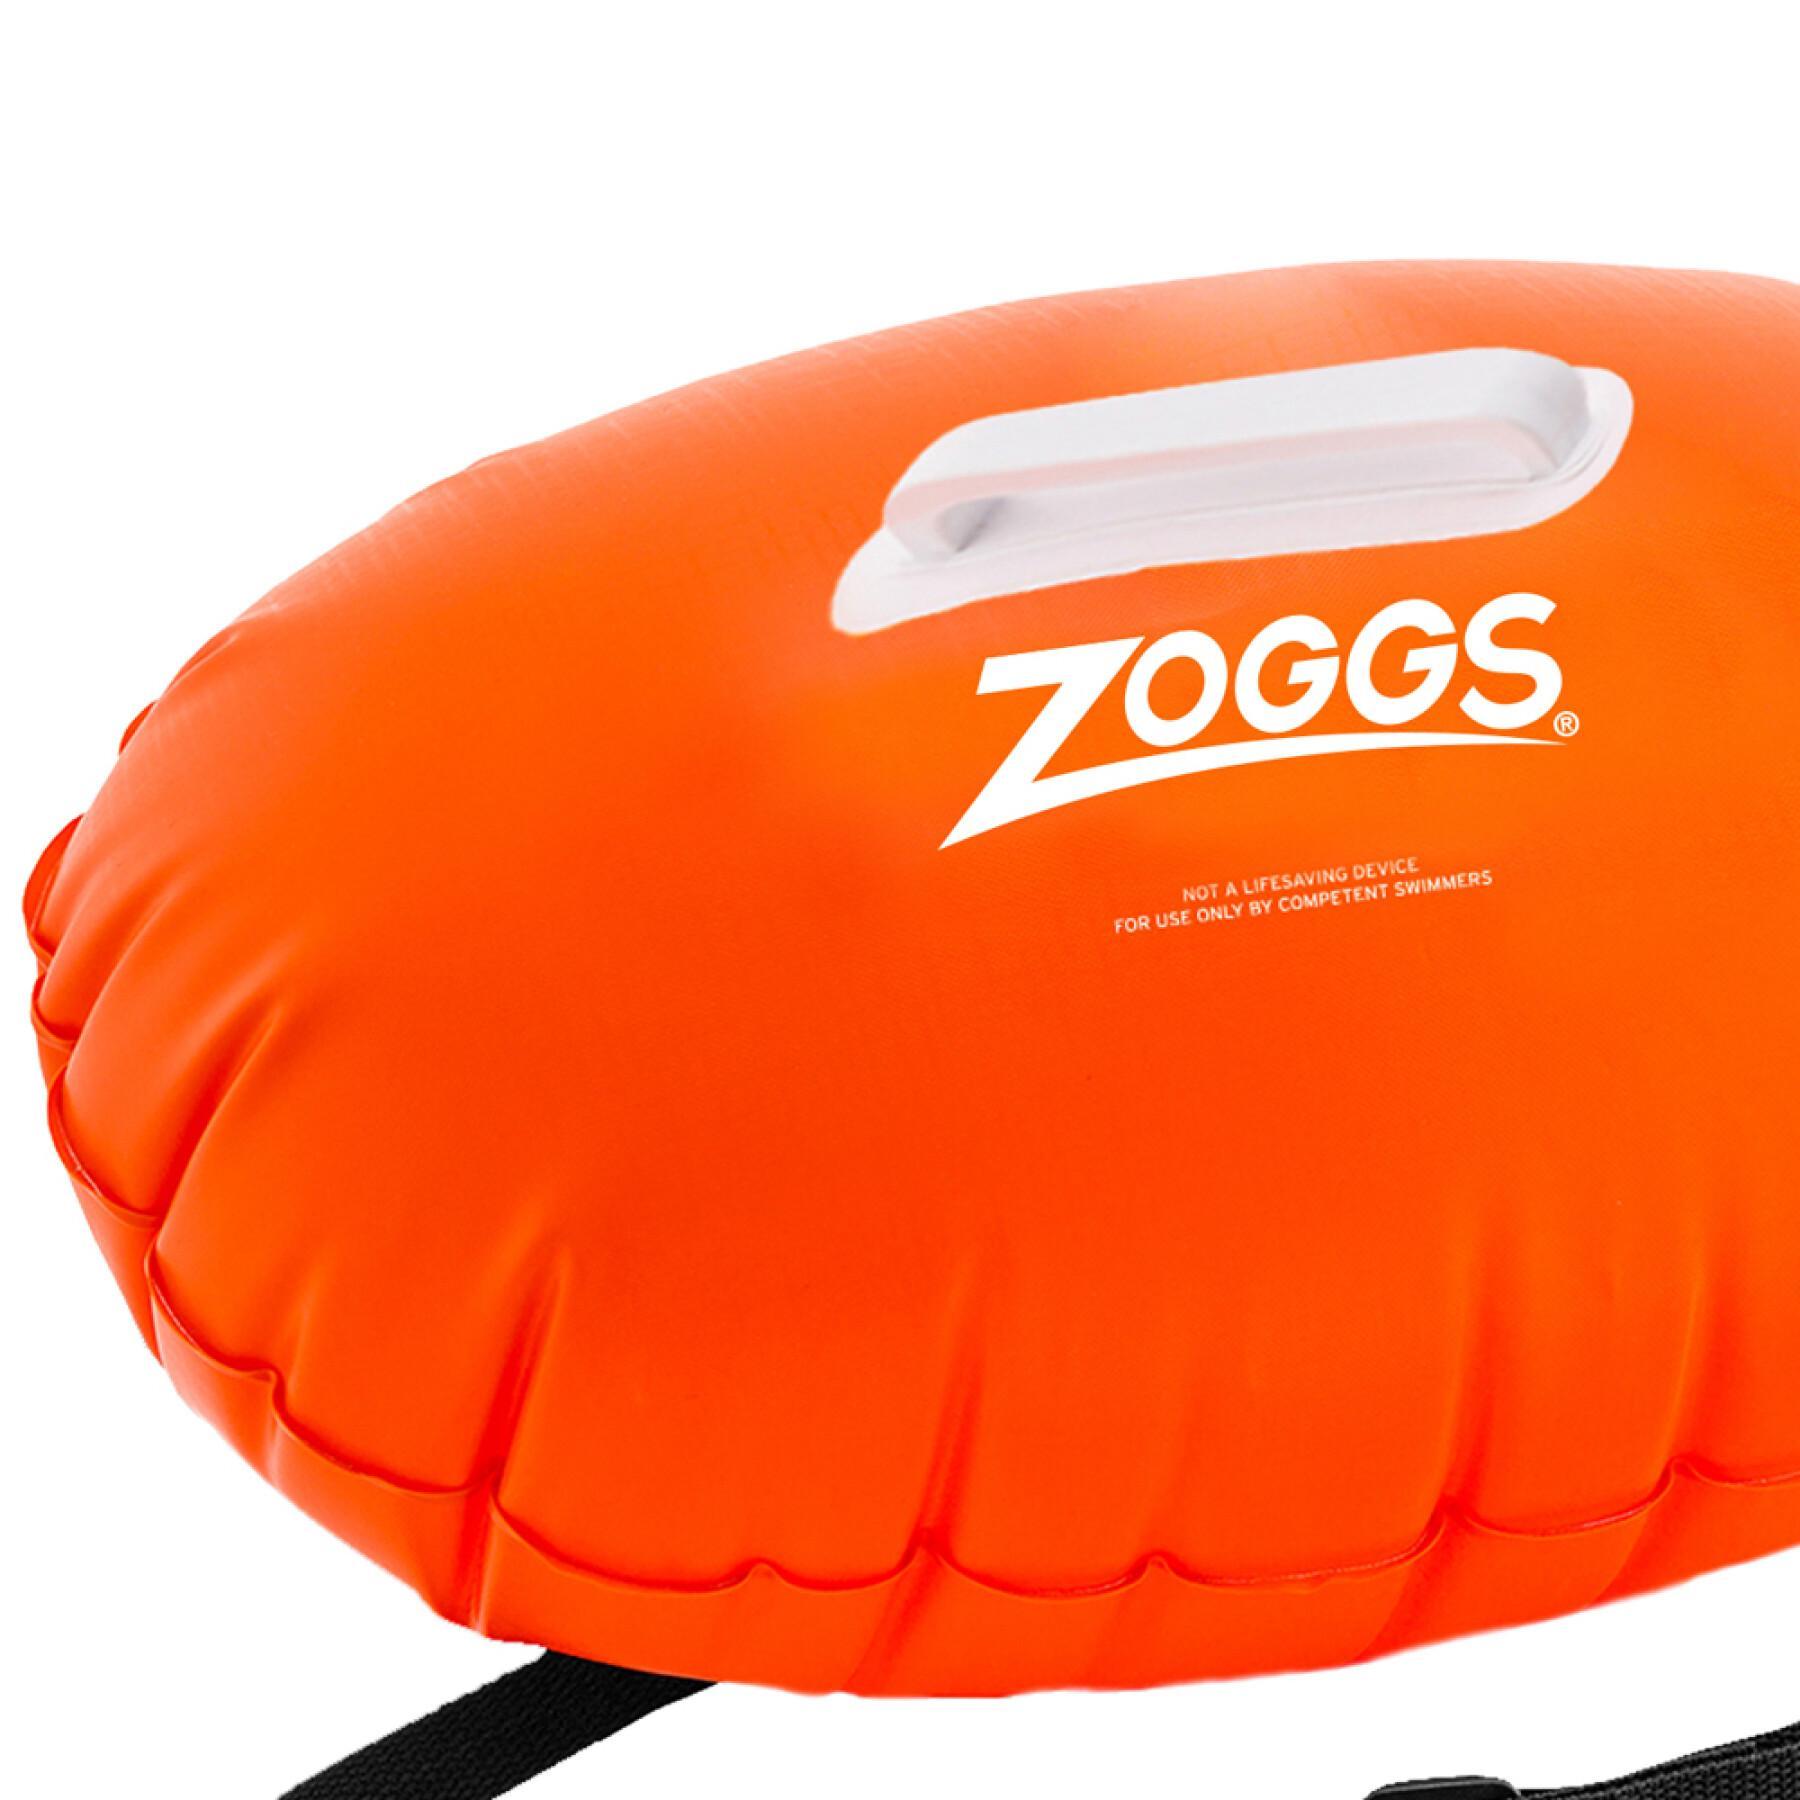 Bóia de natação Zoggs Hiz viz xlite